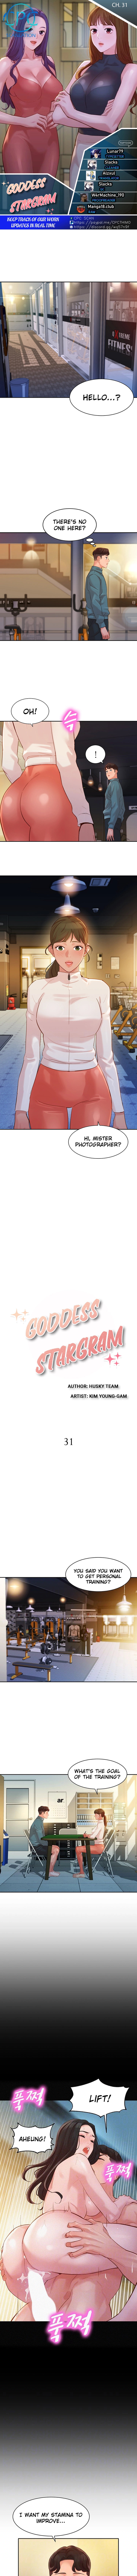 Goddess Stargram - Chapter 31 Page 1